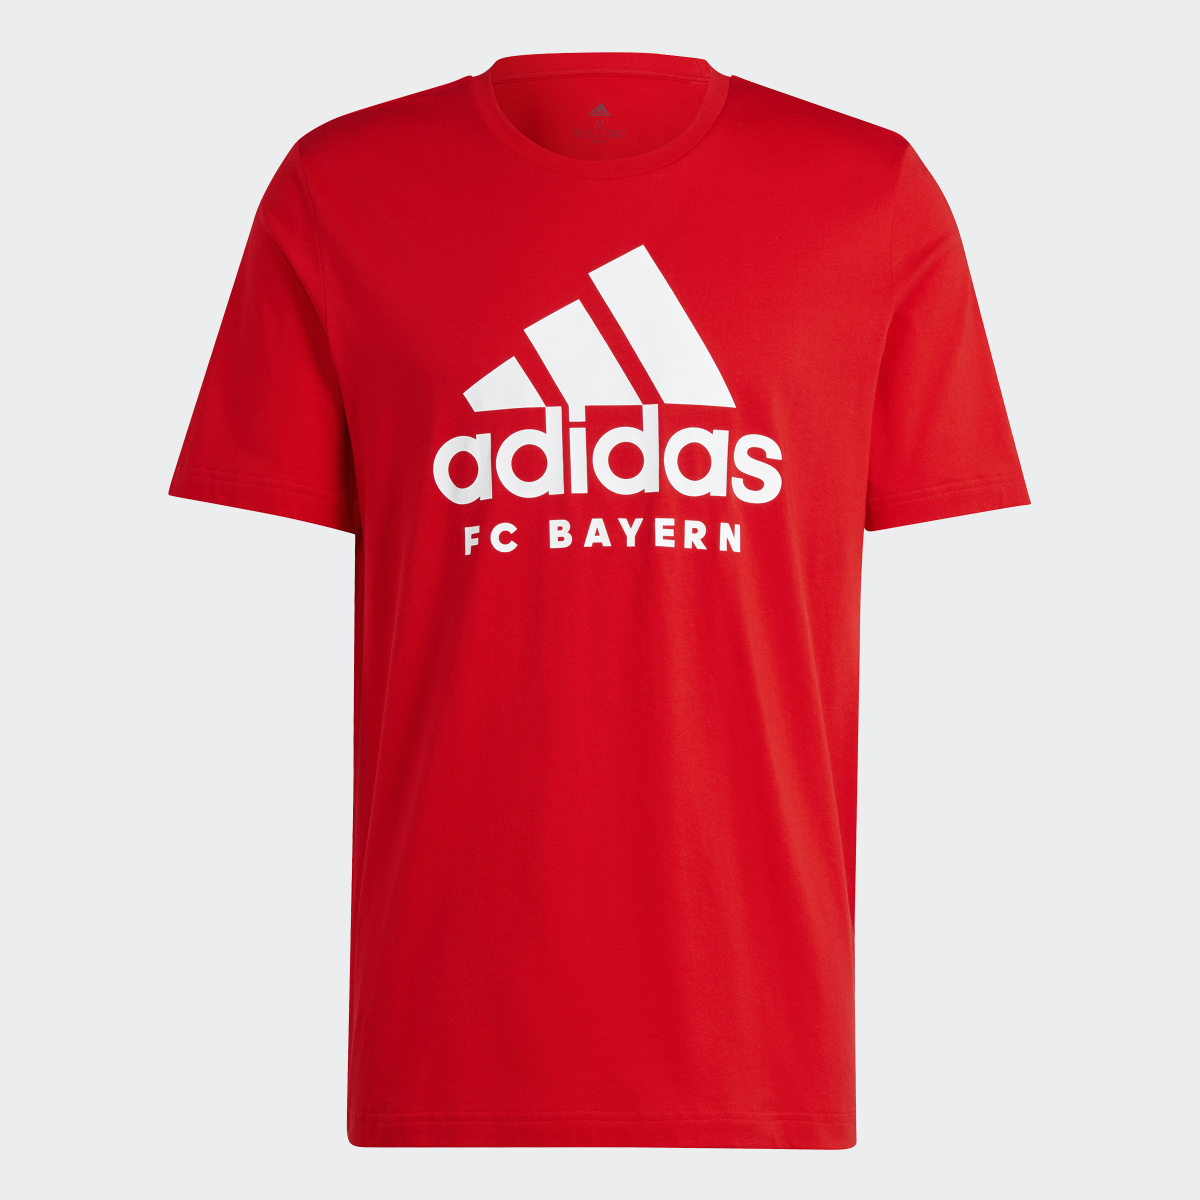 Adidas T-shirt DNA do FC Bayern München. 5